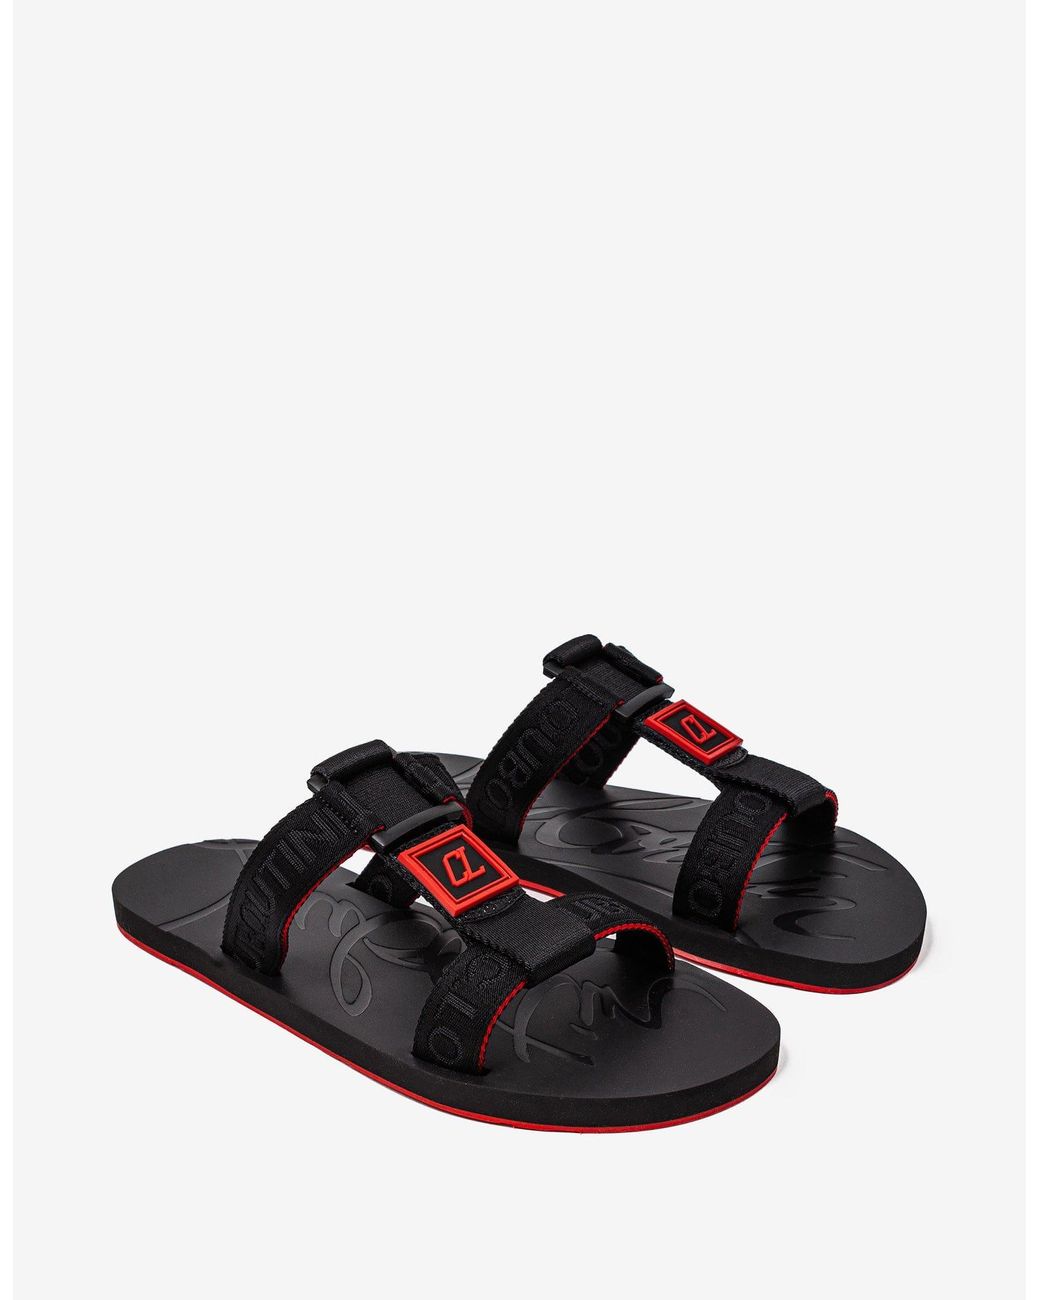 Christian Louboutin Surf Sandal in Black for Men slides and flip flops Leather sandals Mens Shoes Sandals Save 3% 